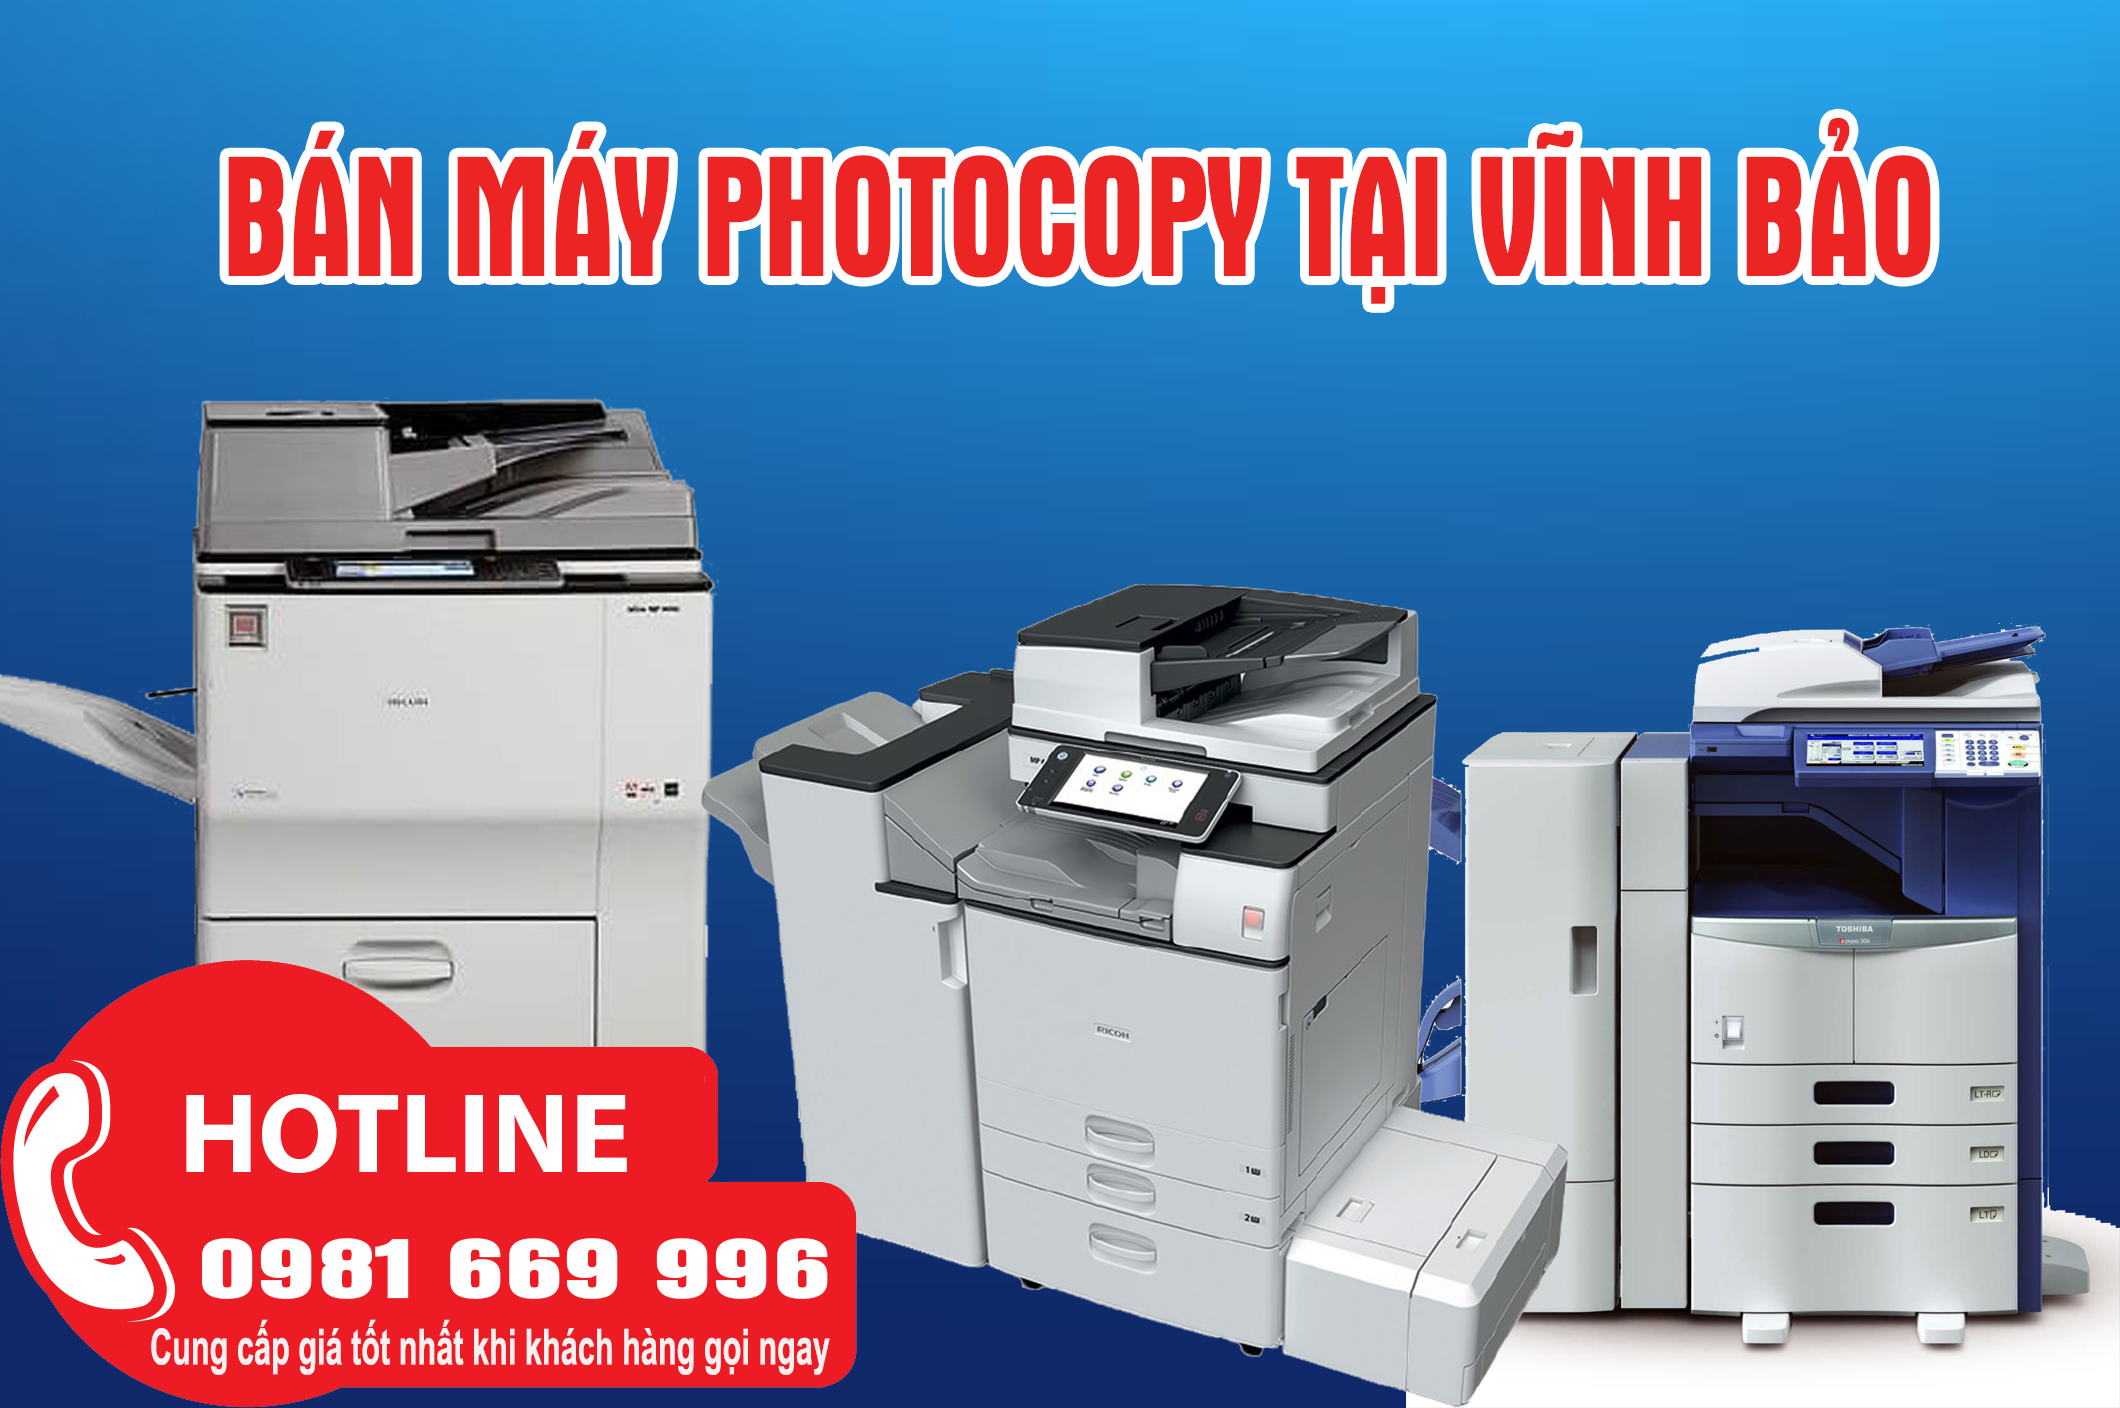 Bán máy photocopy tại Vĩnh Bảo Giá rẻ